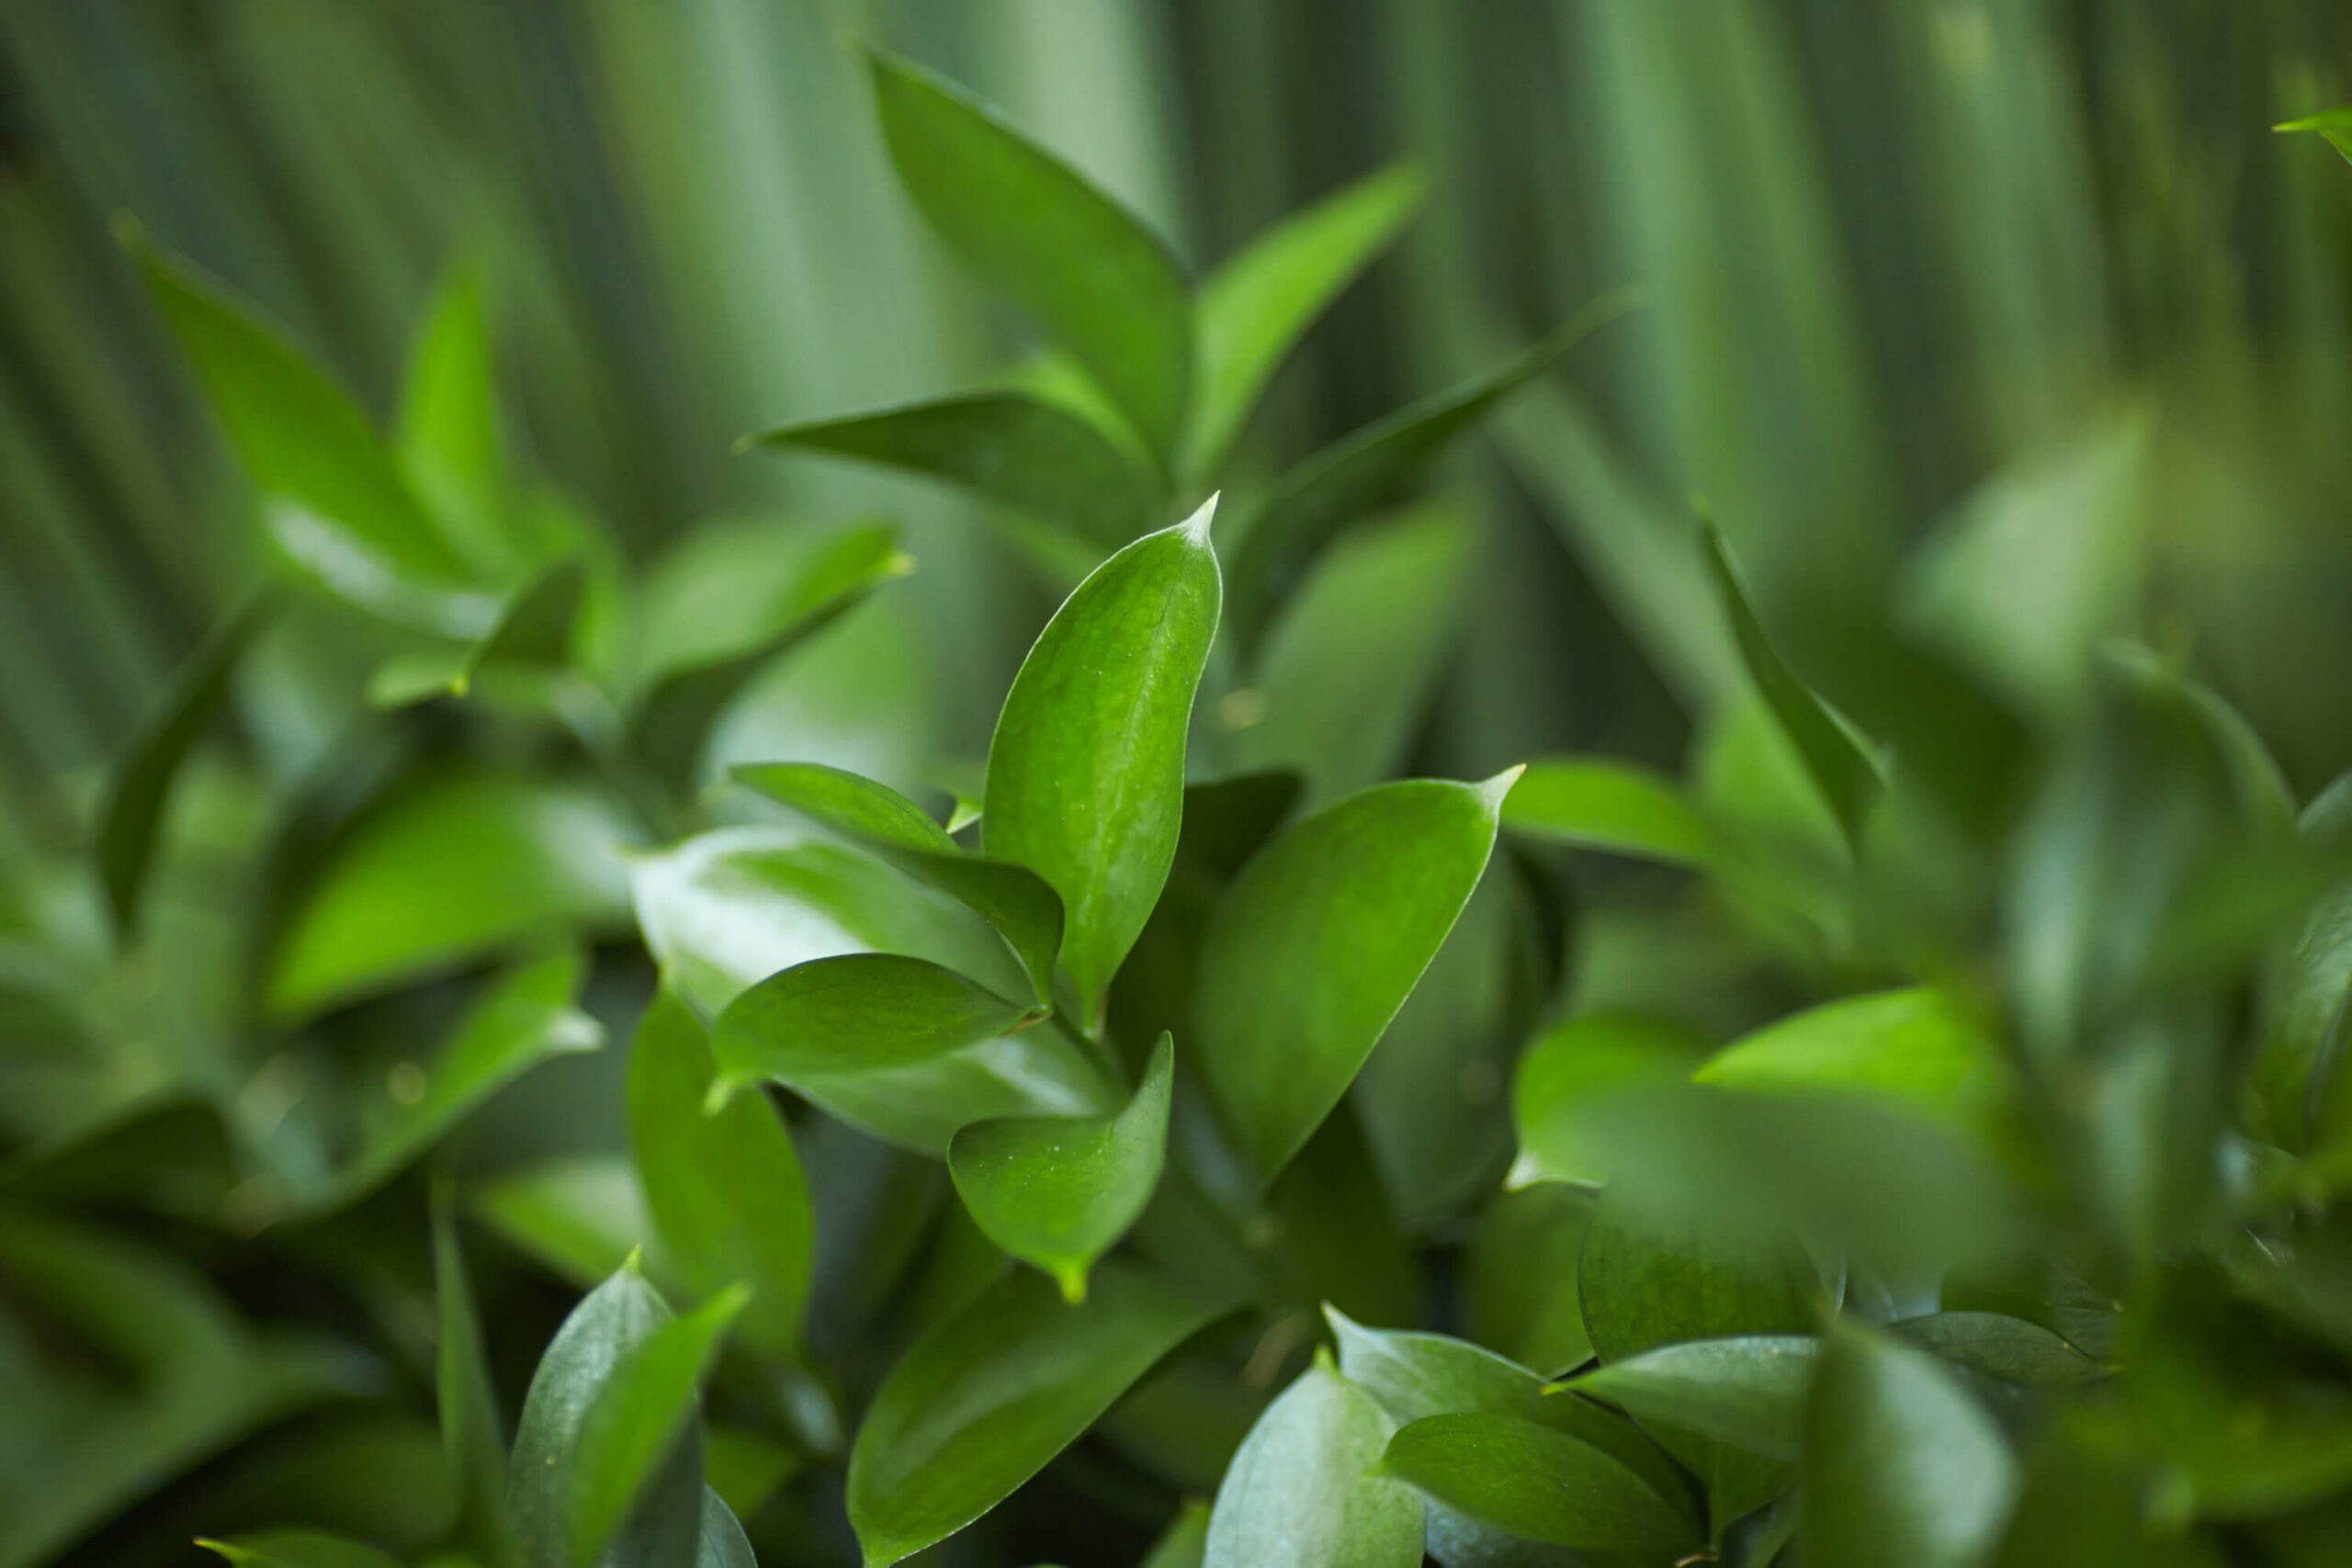 Salal Lemon Leaf foliage — filler greens for bouquets.